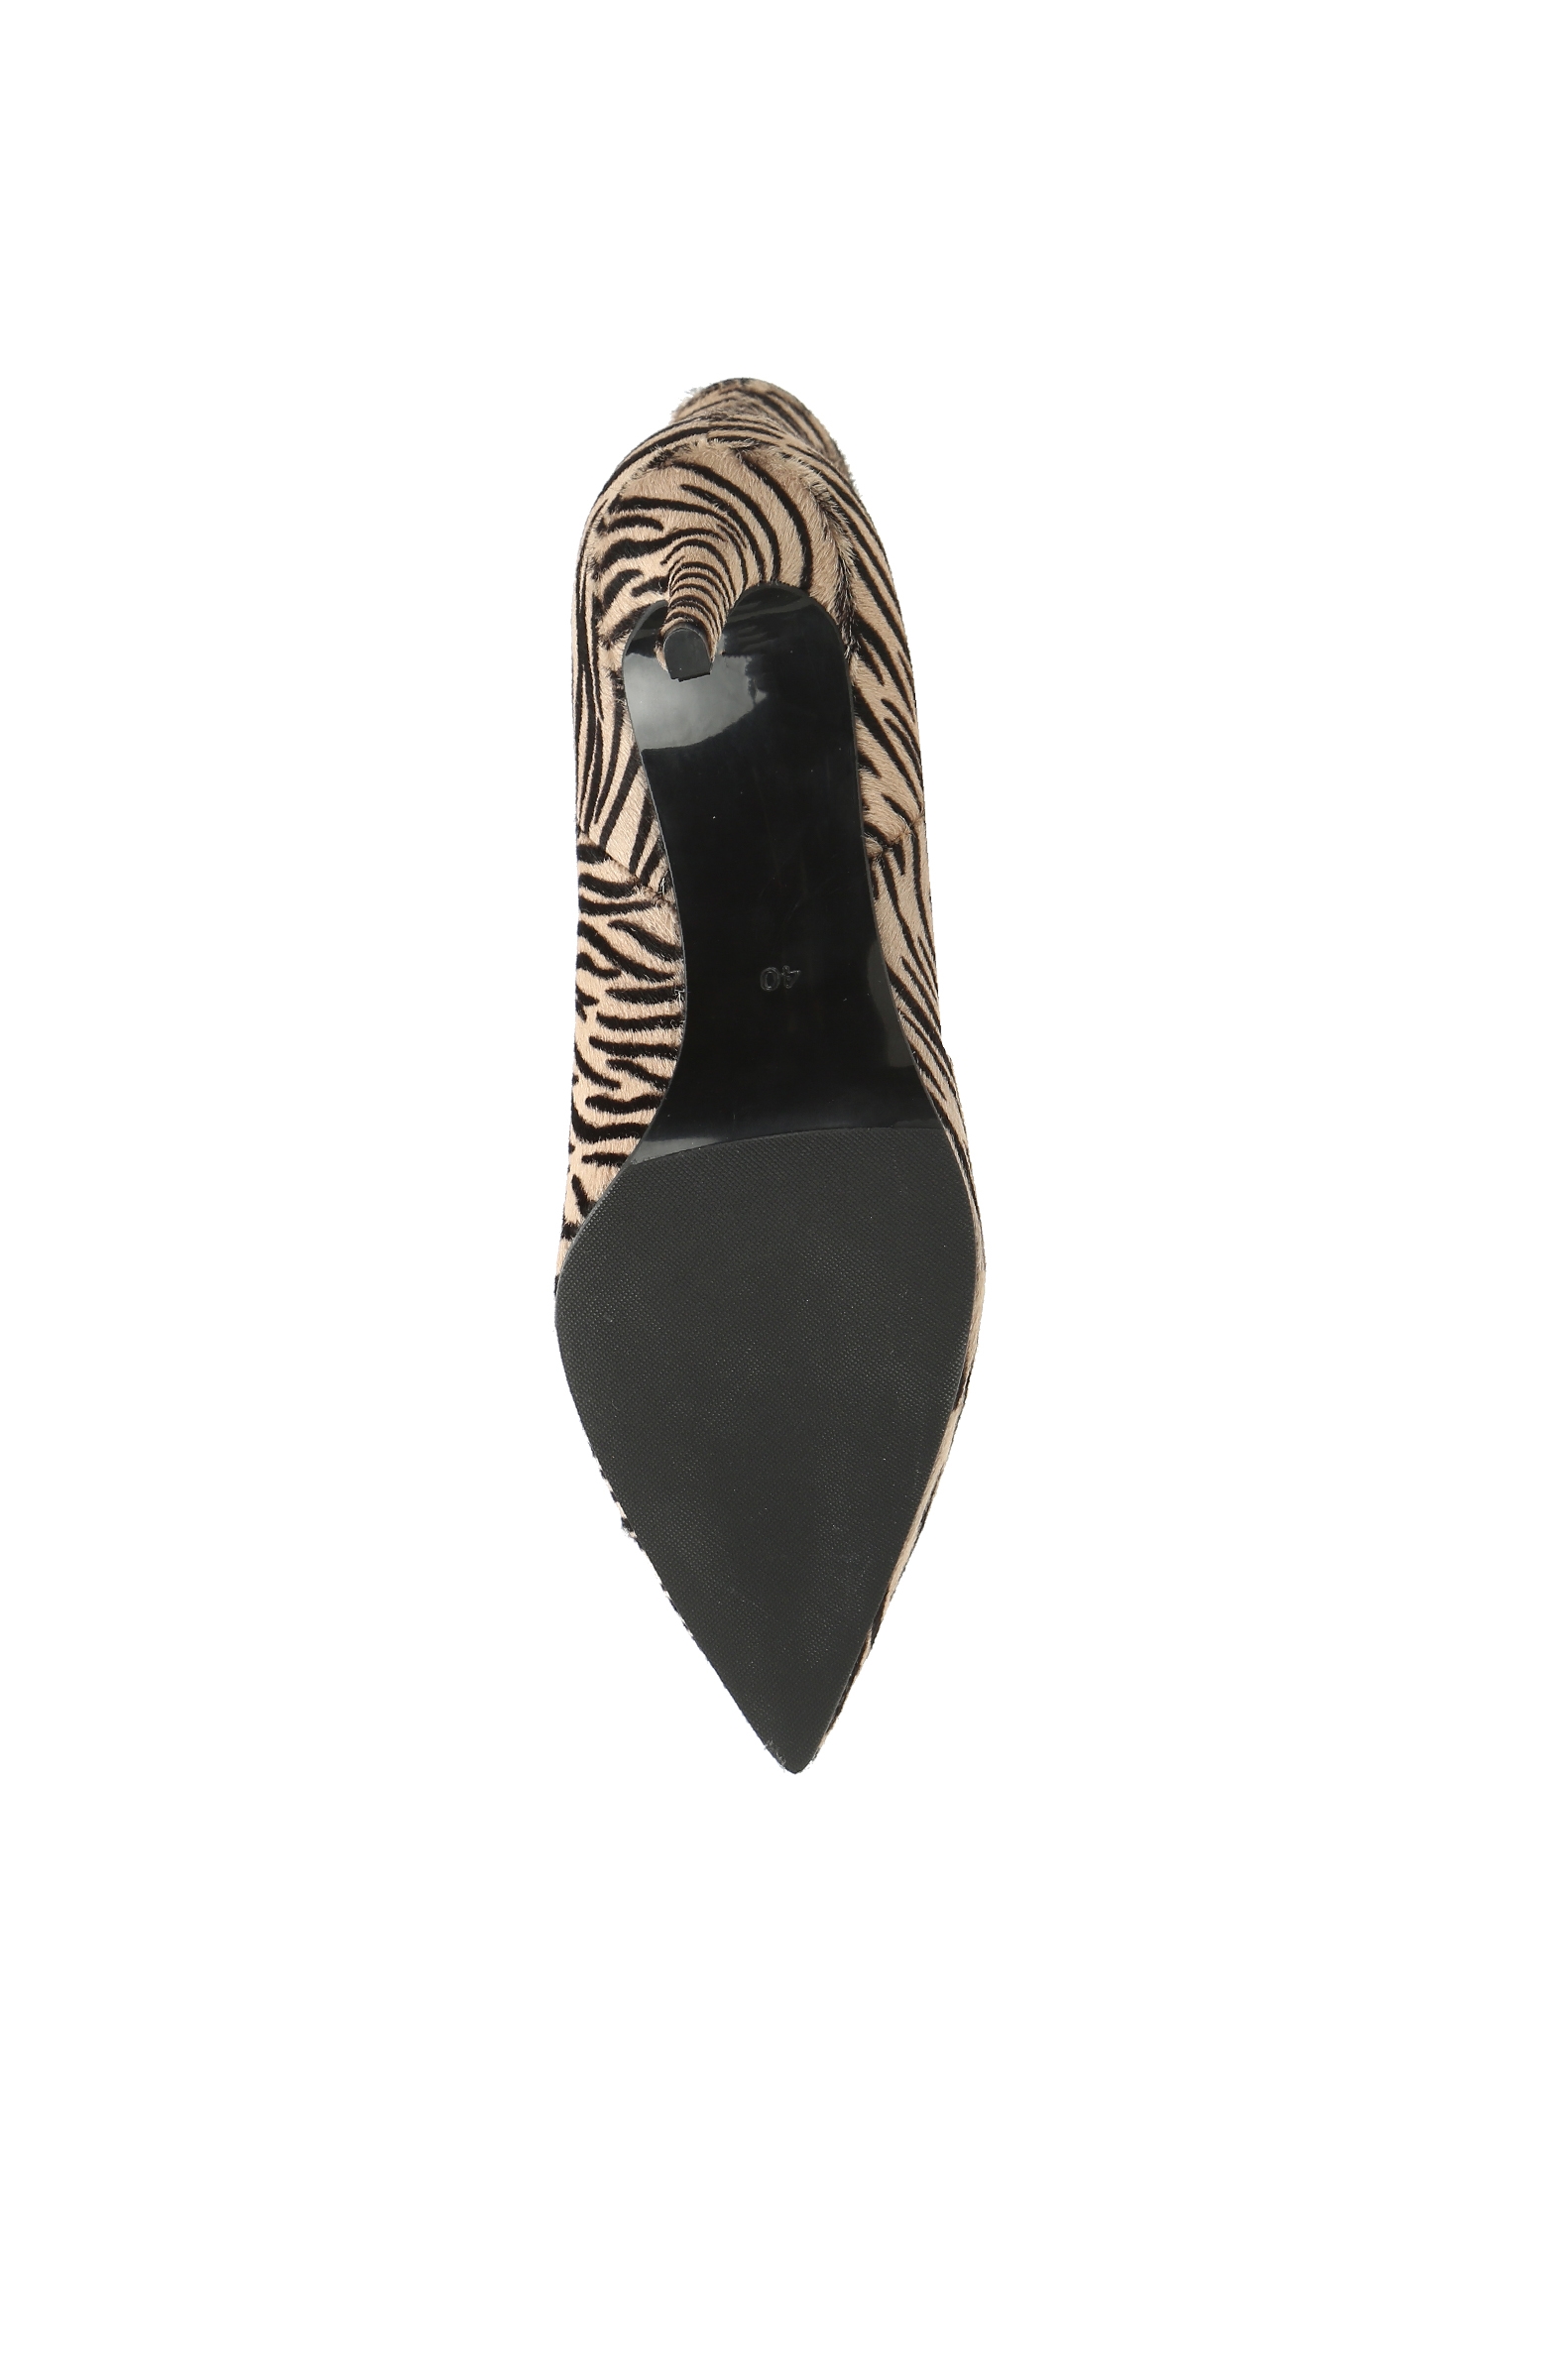 Bej Siyah Leopar Desenli Kadın Süet Deri Bot